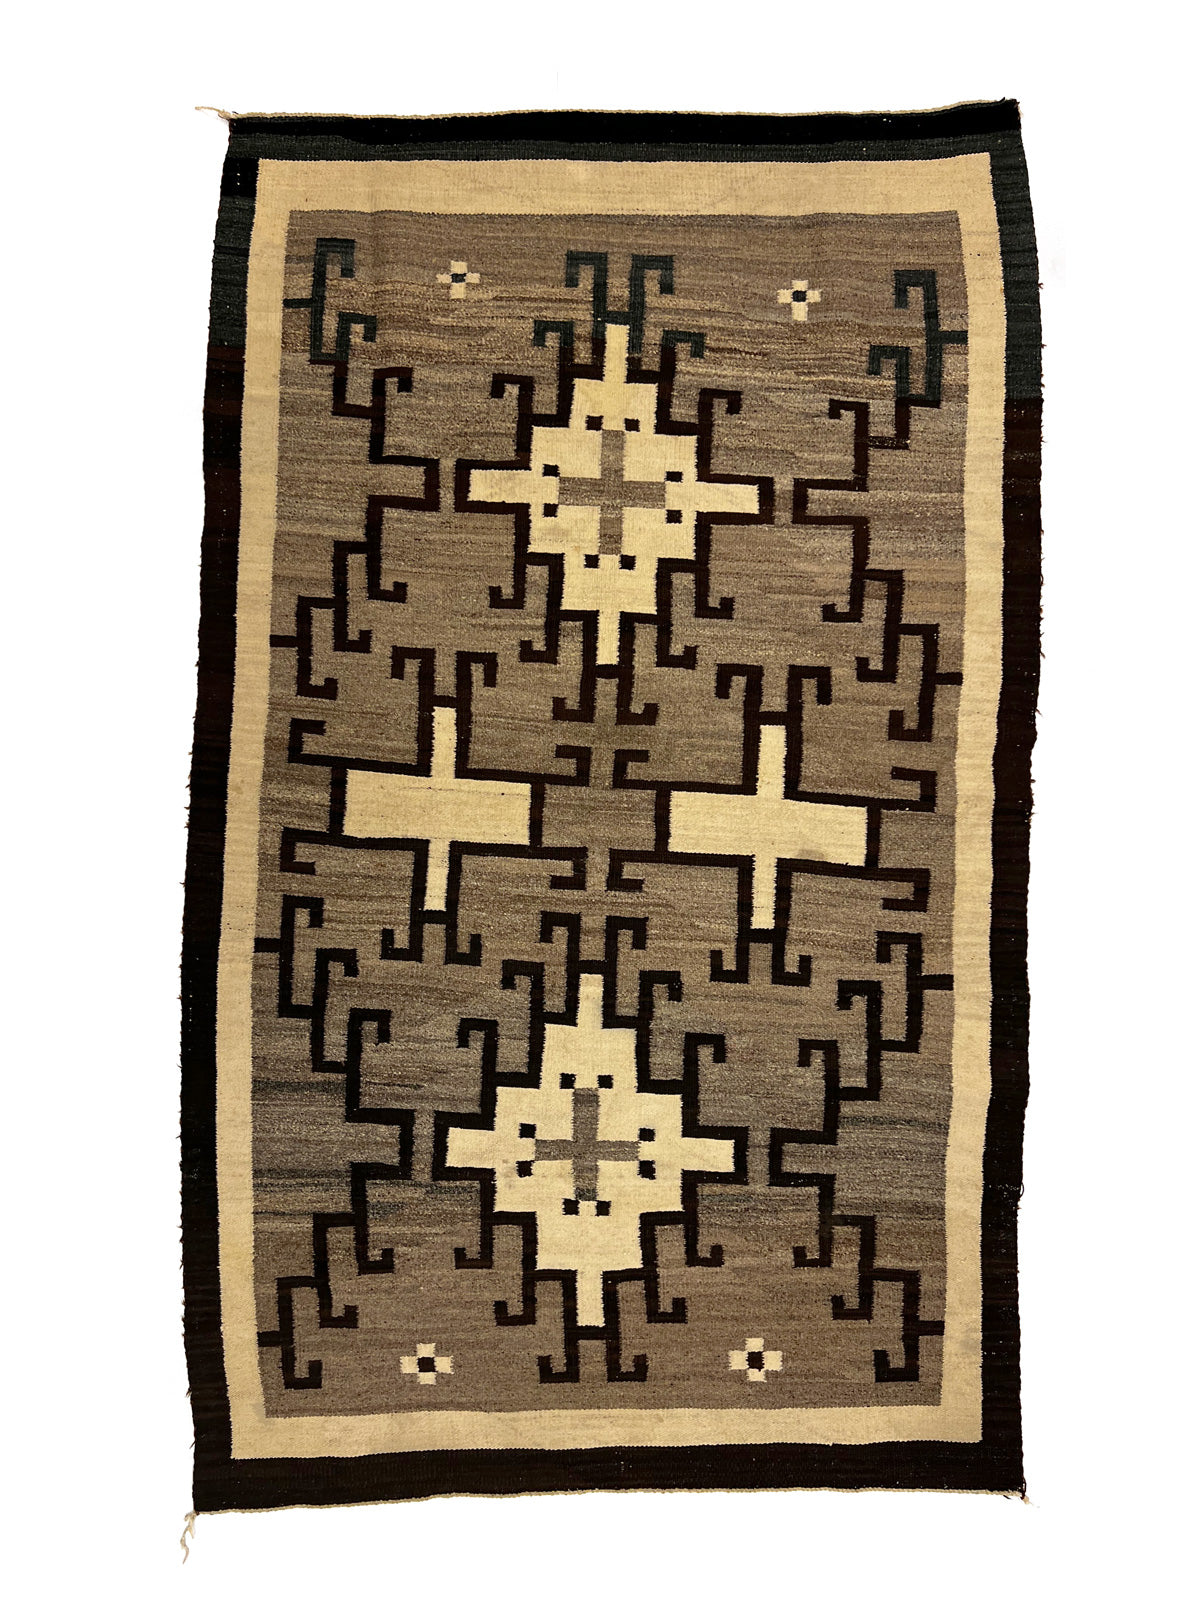 Navajo Crystal Rug c. 1920s, 85" x 51.5" (T6491-A)